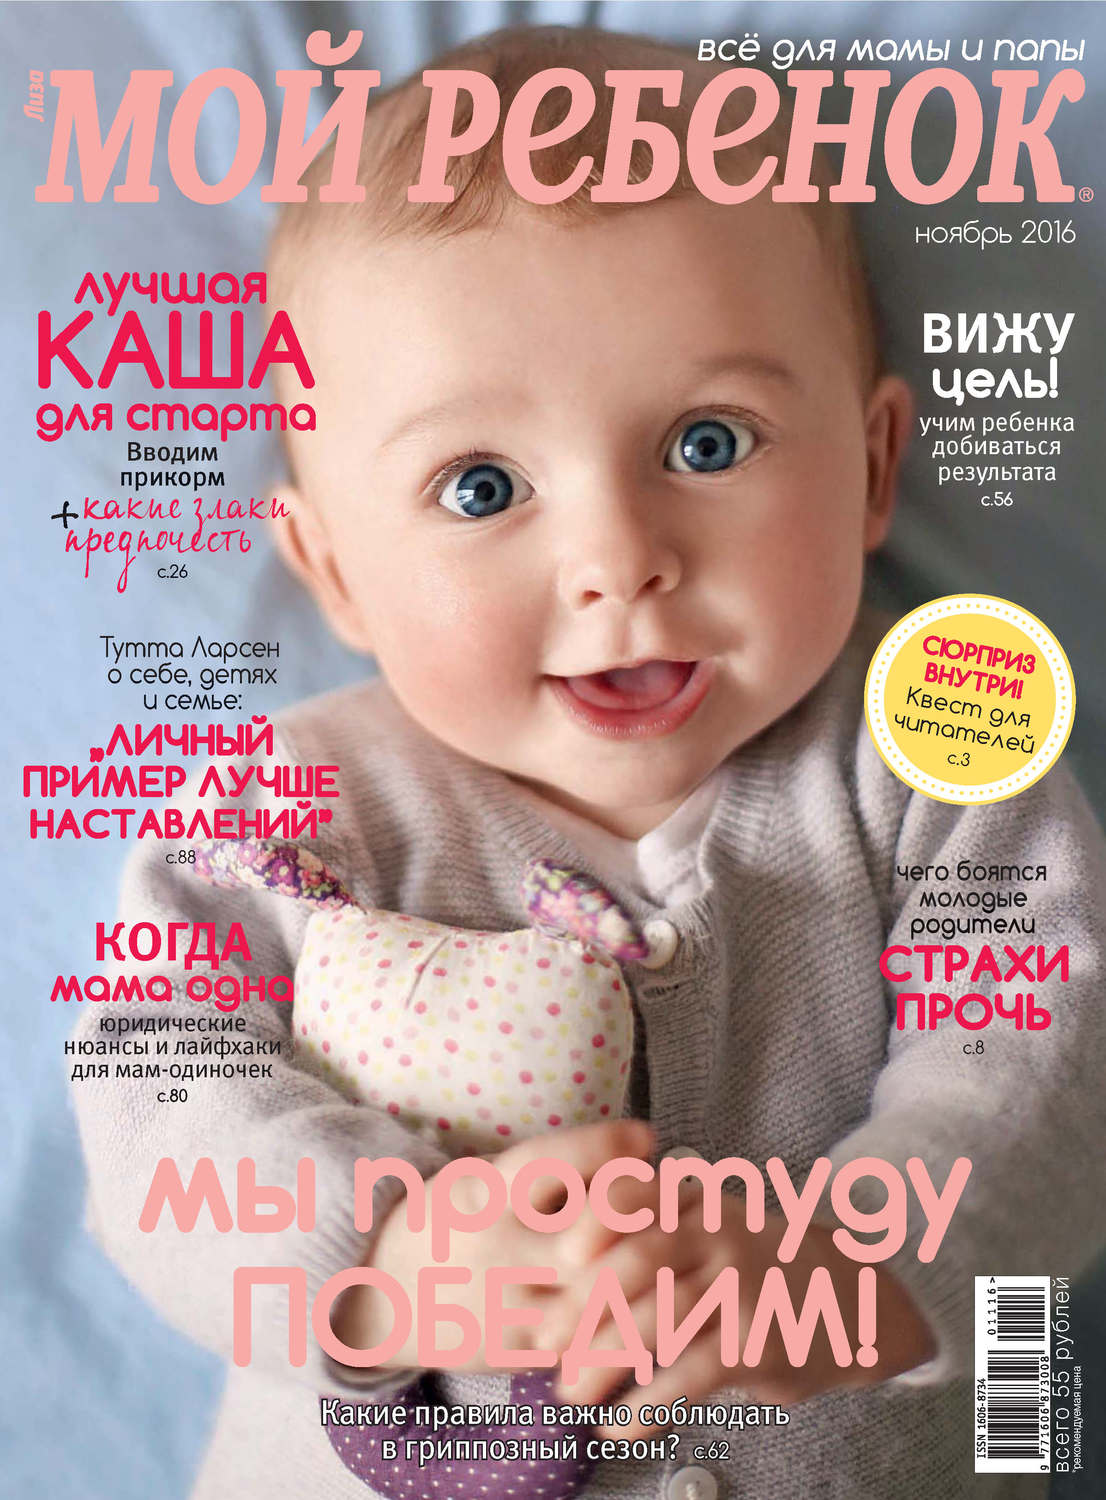 фото ребенка на обложку журнала